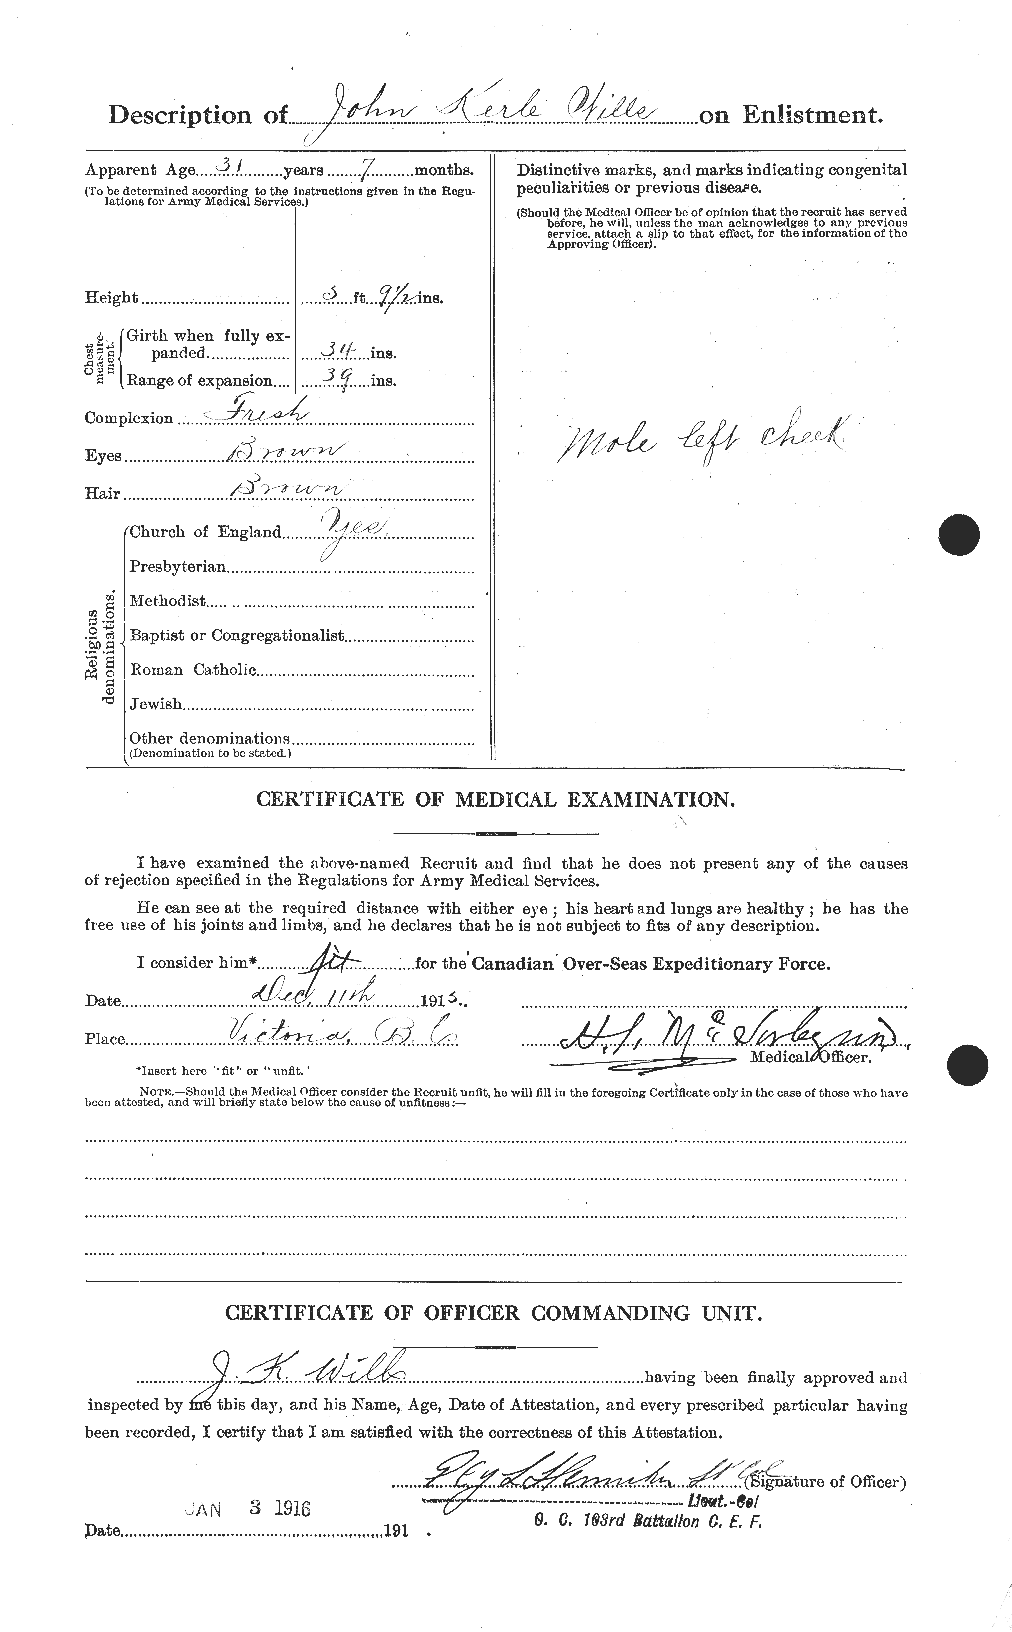 Dossiers du Personnel de la Première Guerre mondiale - CEC 678418b